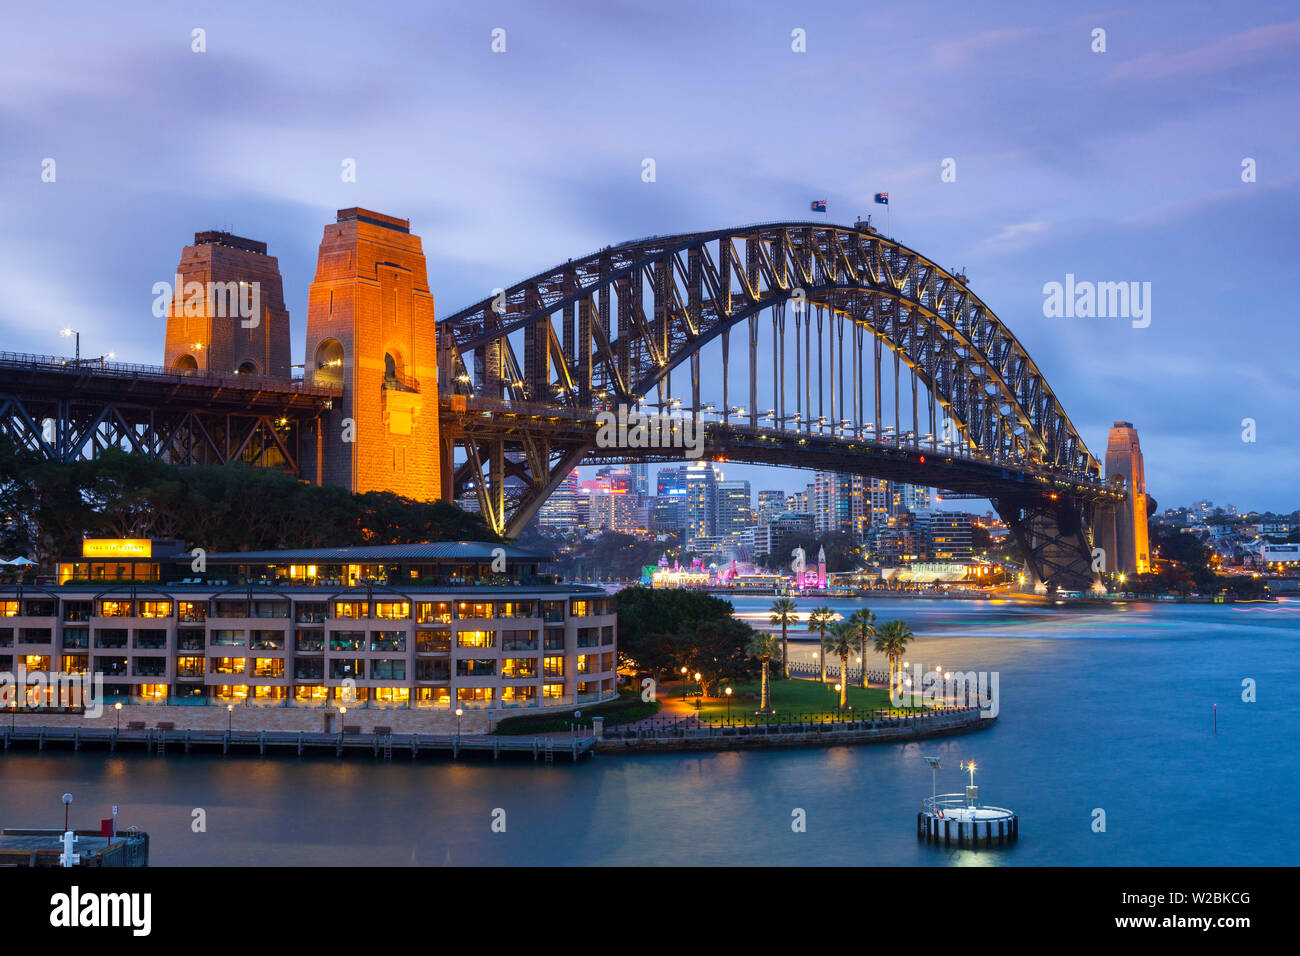 Le Harbour Bridge, Darling Harbour, Sydney, New South Wales, Australia Banque D'Images